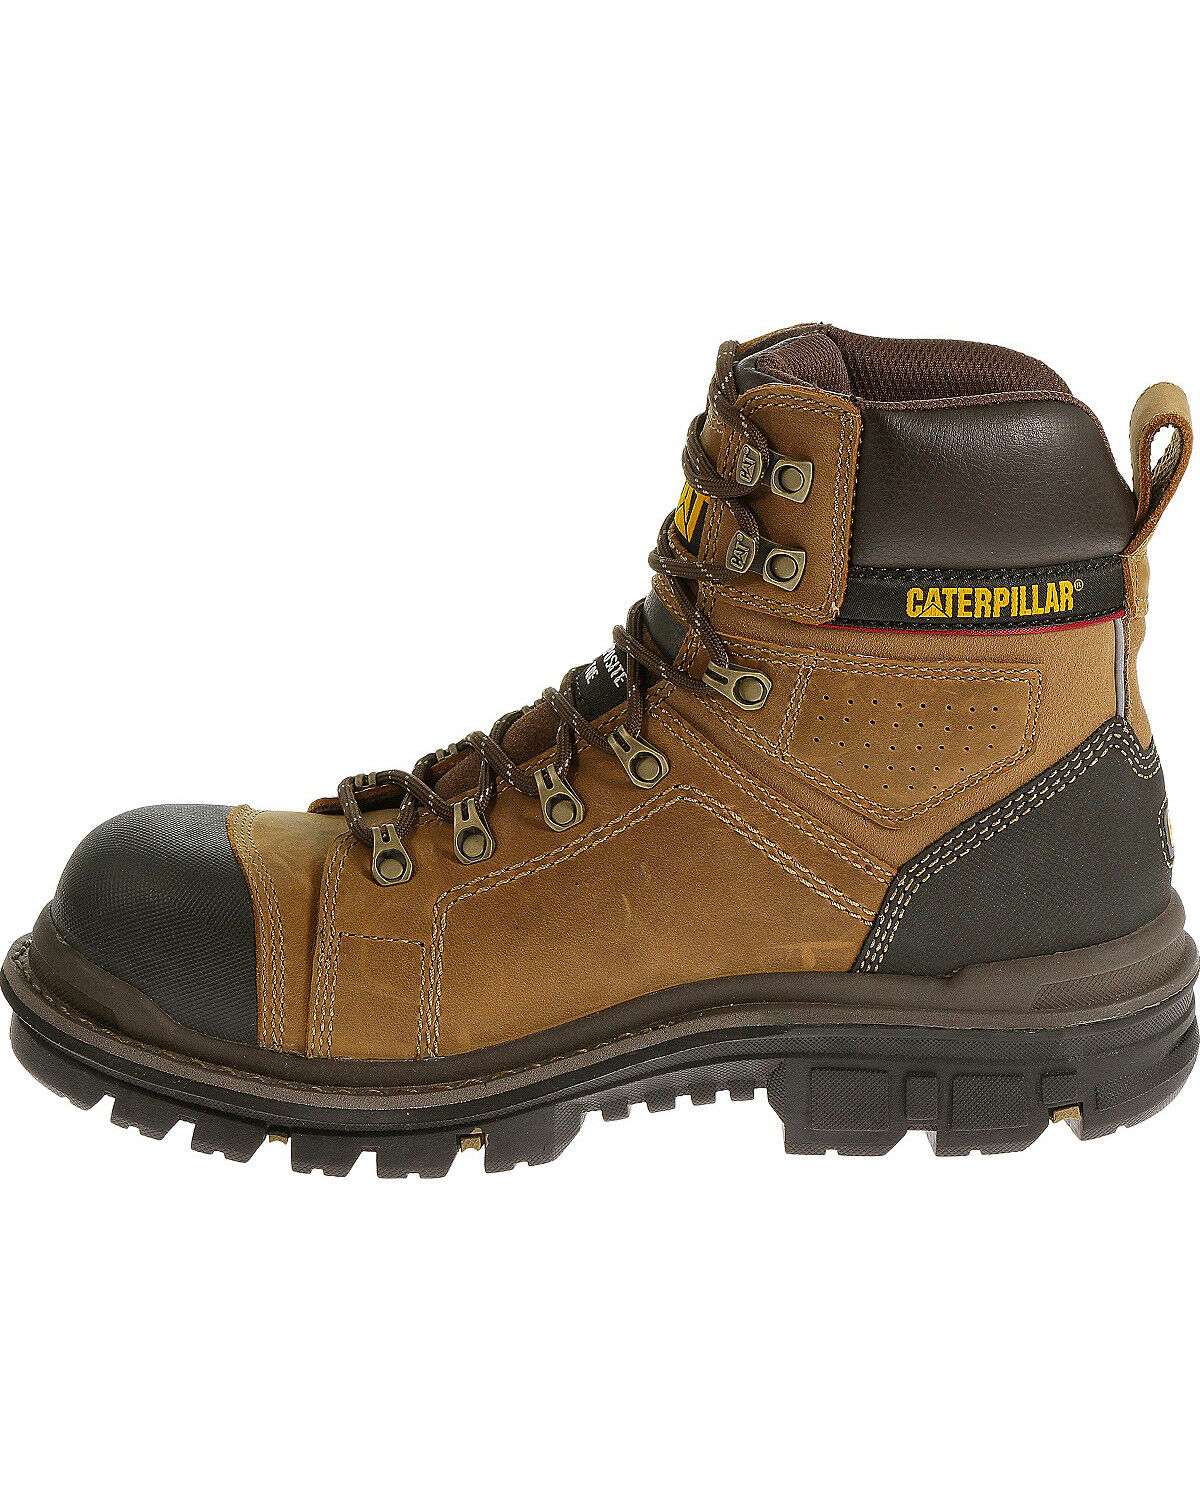 caterpillar men's steel toe work boots